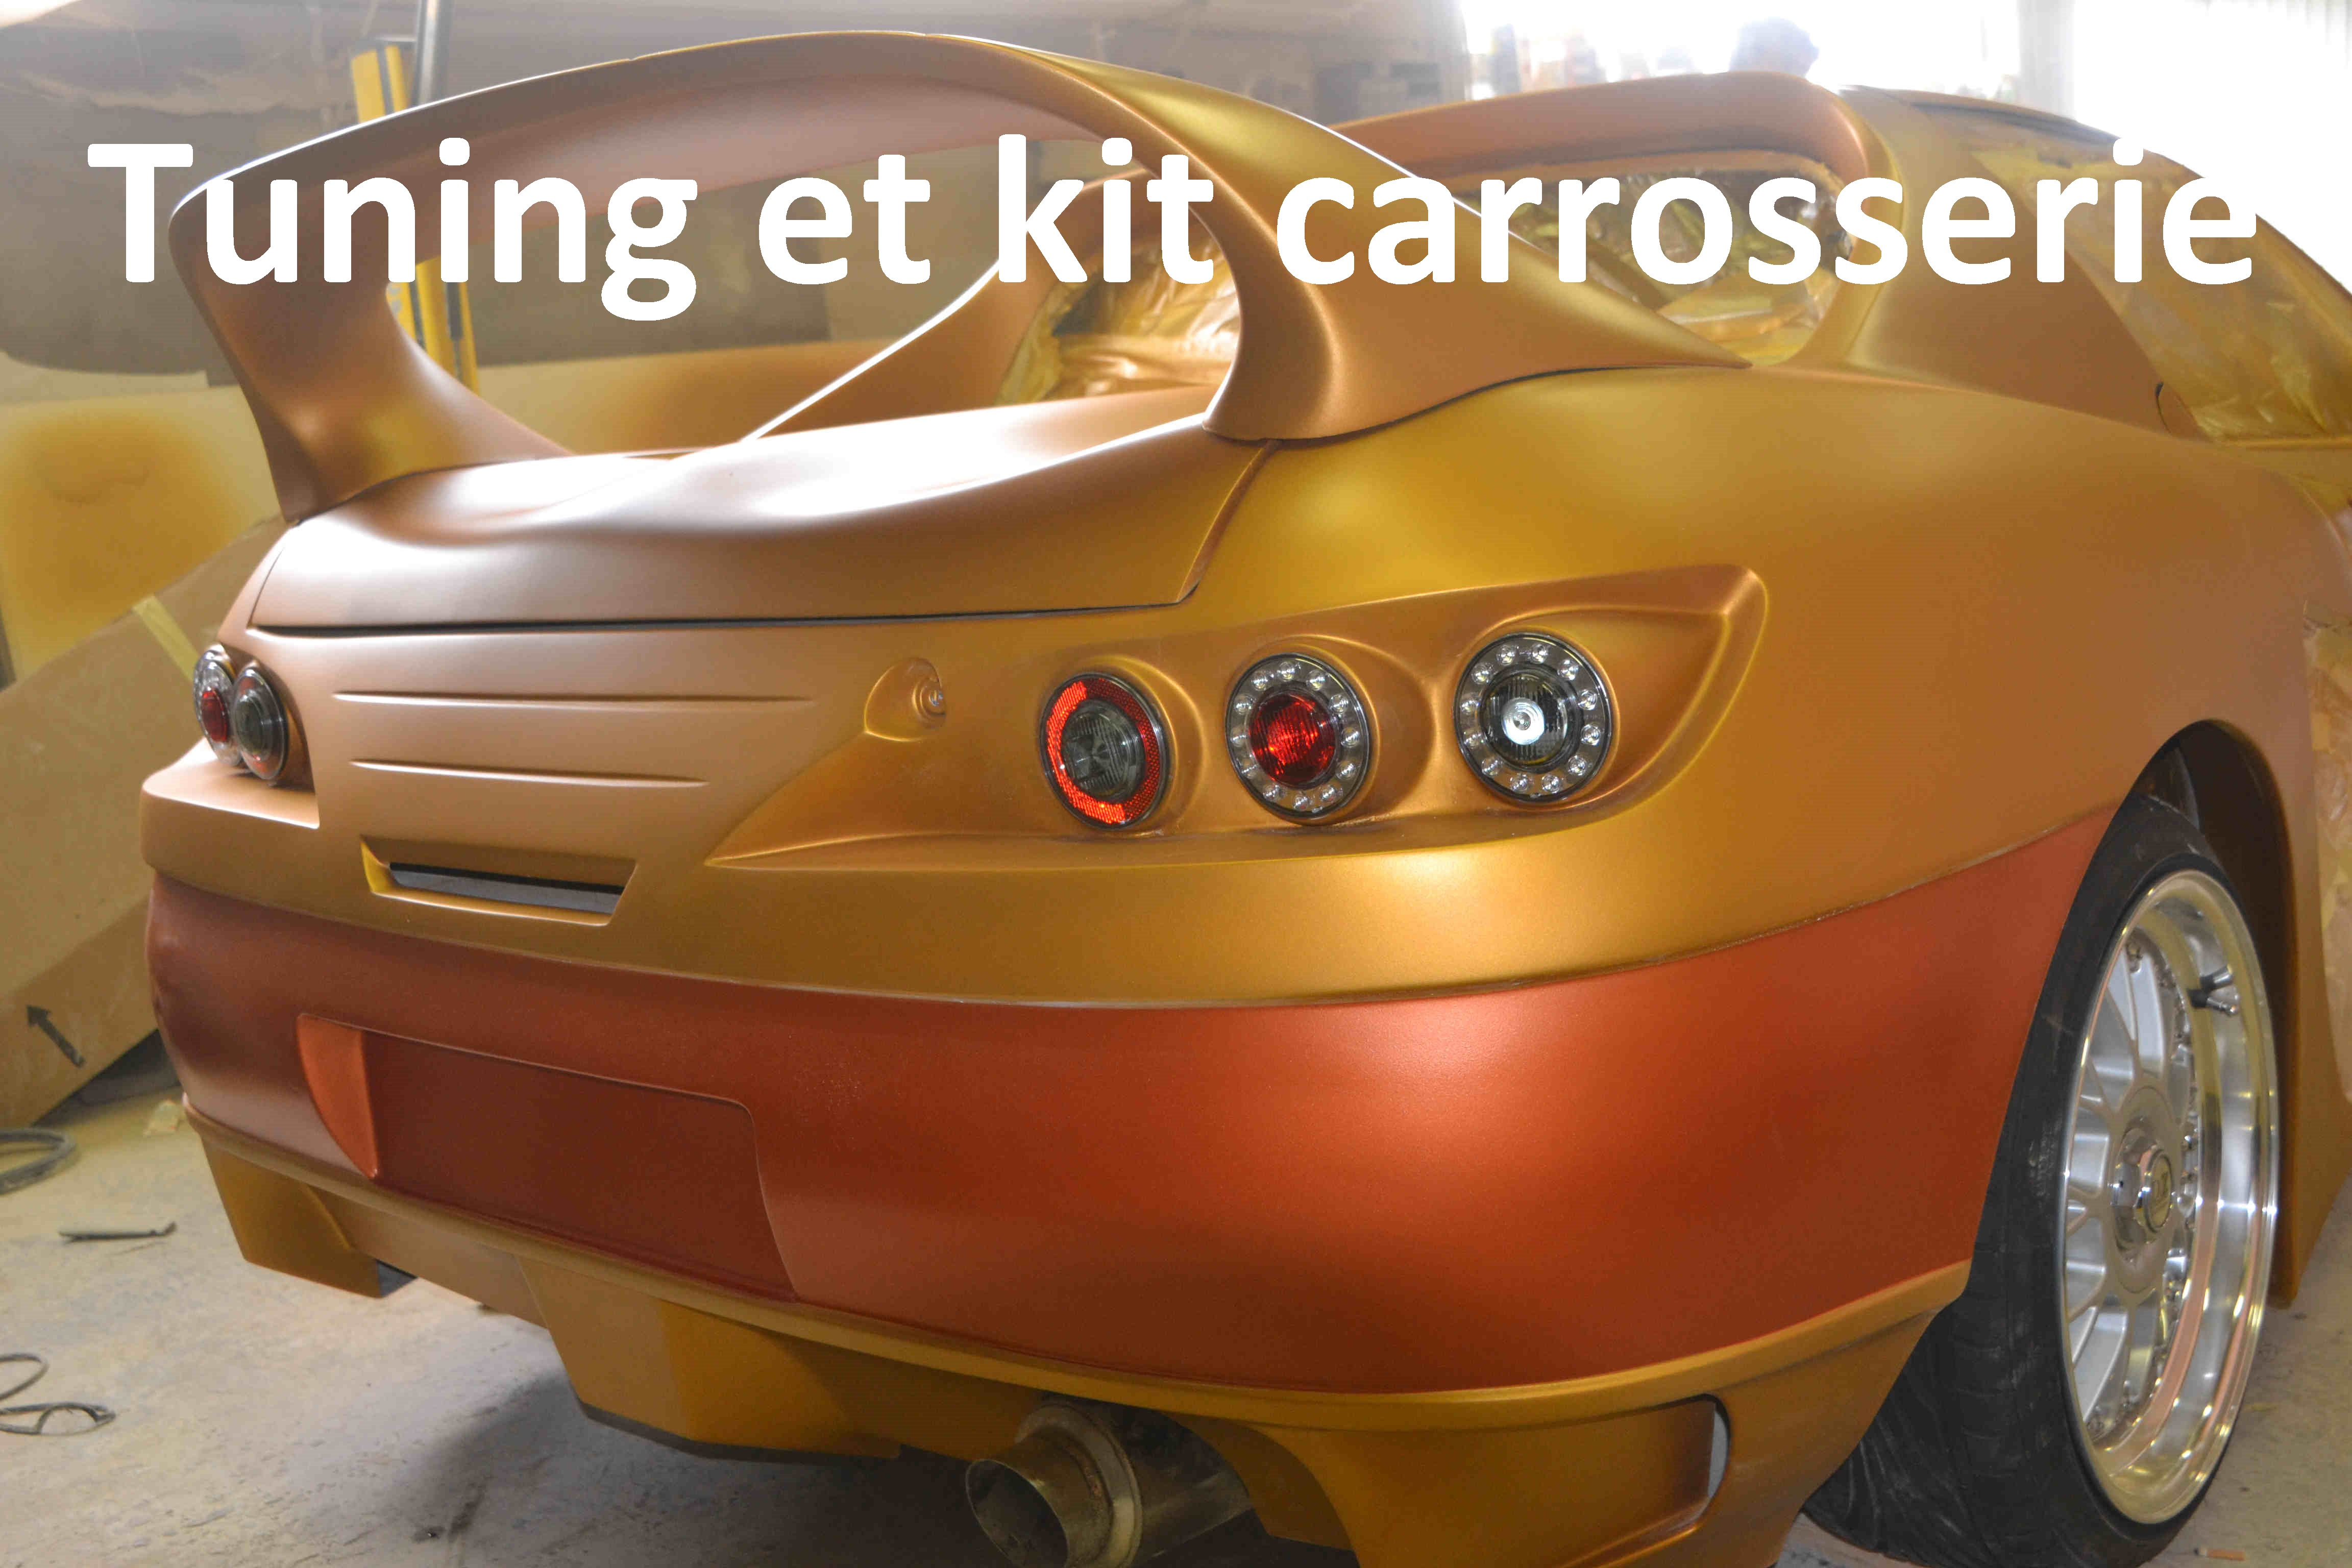 afbeelding van een tuning, Honda CRX Delsol ,CRX wide body, kit car, kit carrosserie, rplique